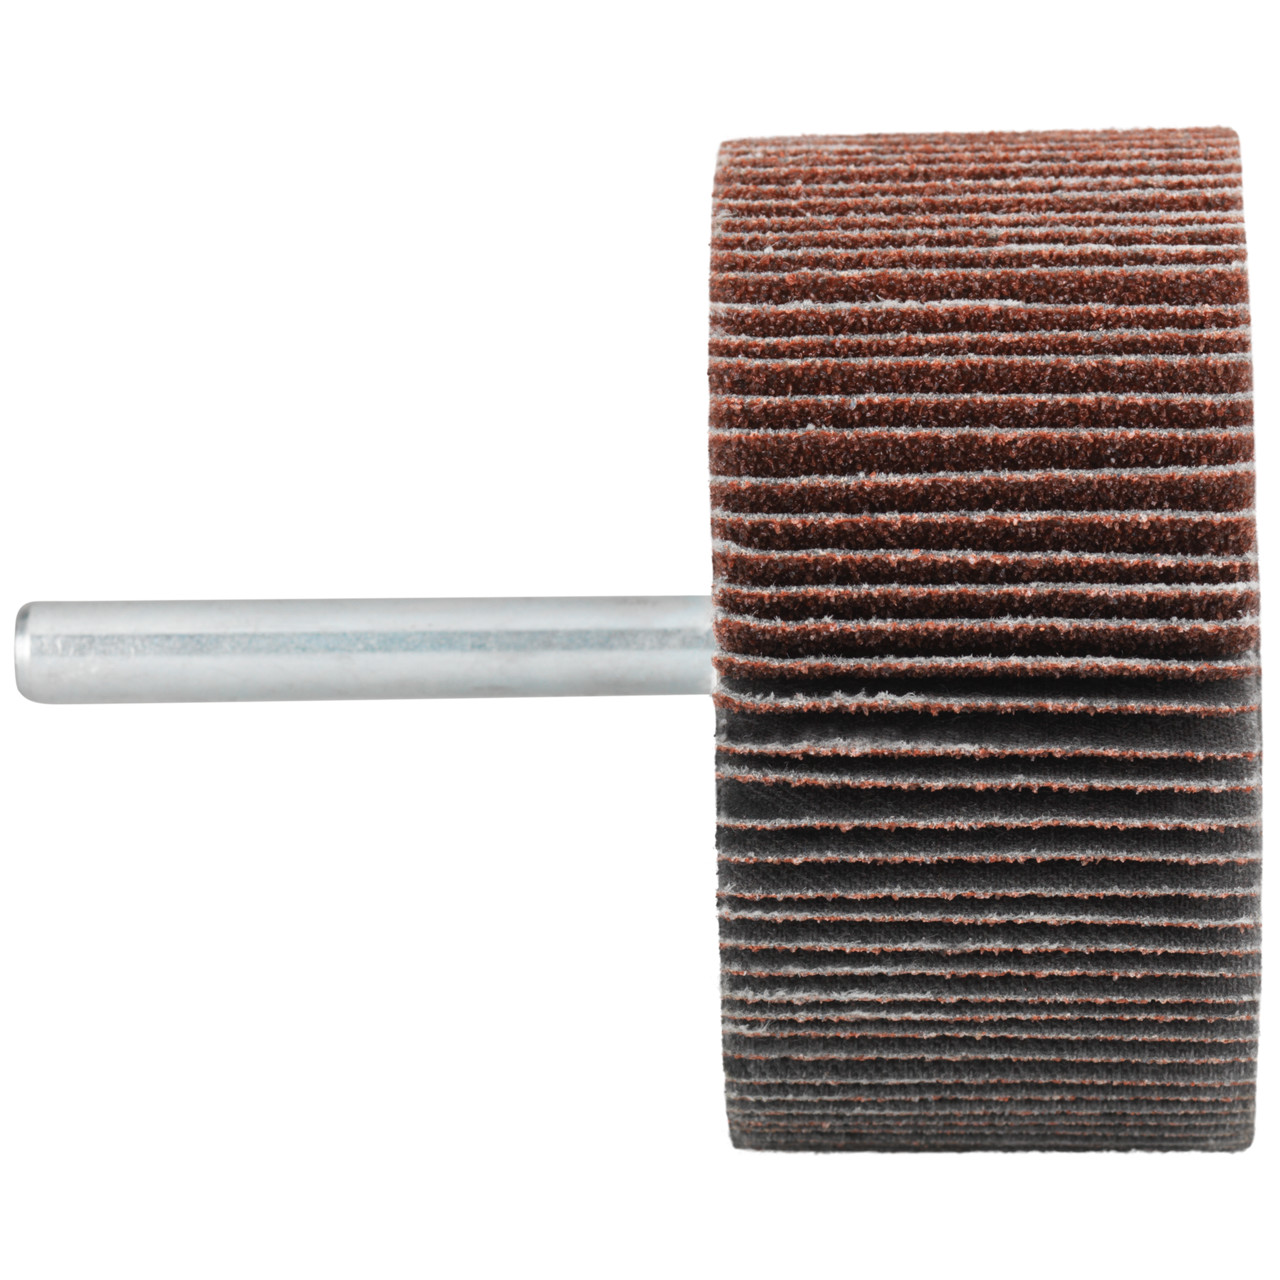 Tyrolit A-P01 C X Pennen DxD 60x30 Voor staal, roestvast staal en non-ferrometalen, P80, vorm: 52LA, Art. 816960